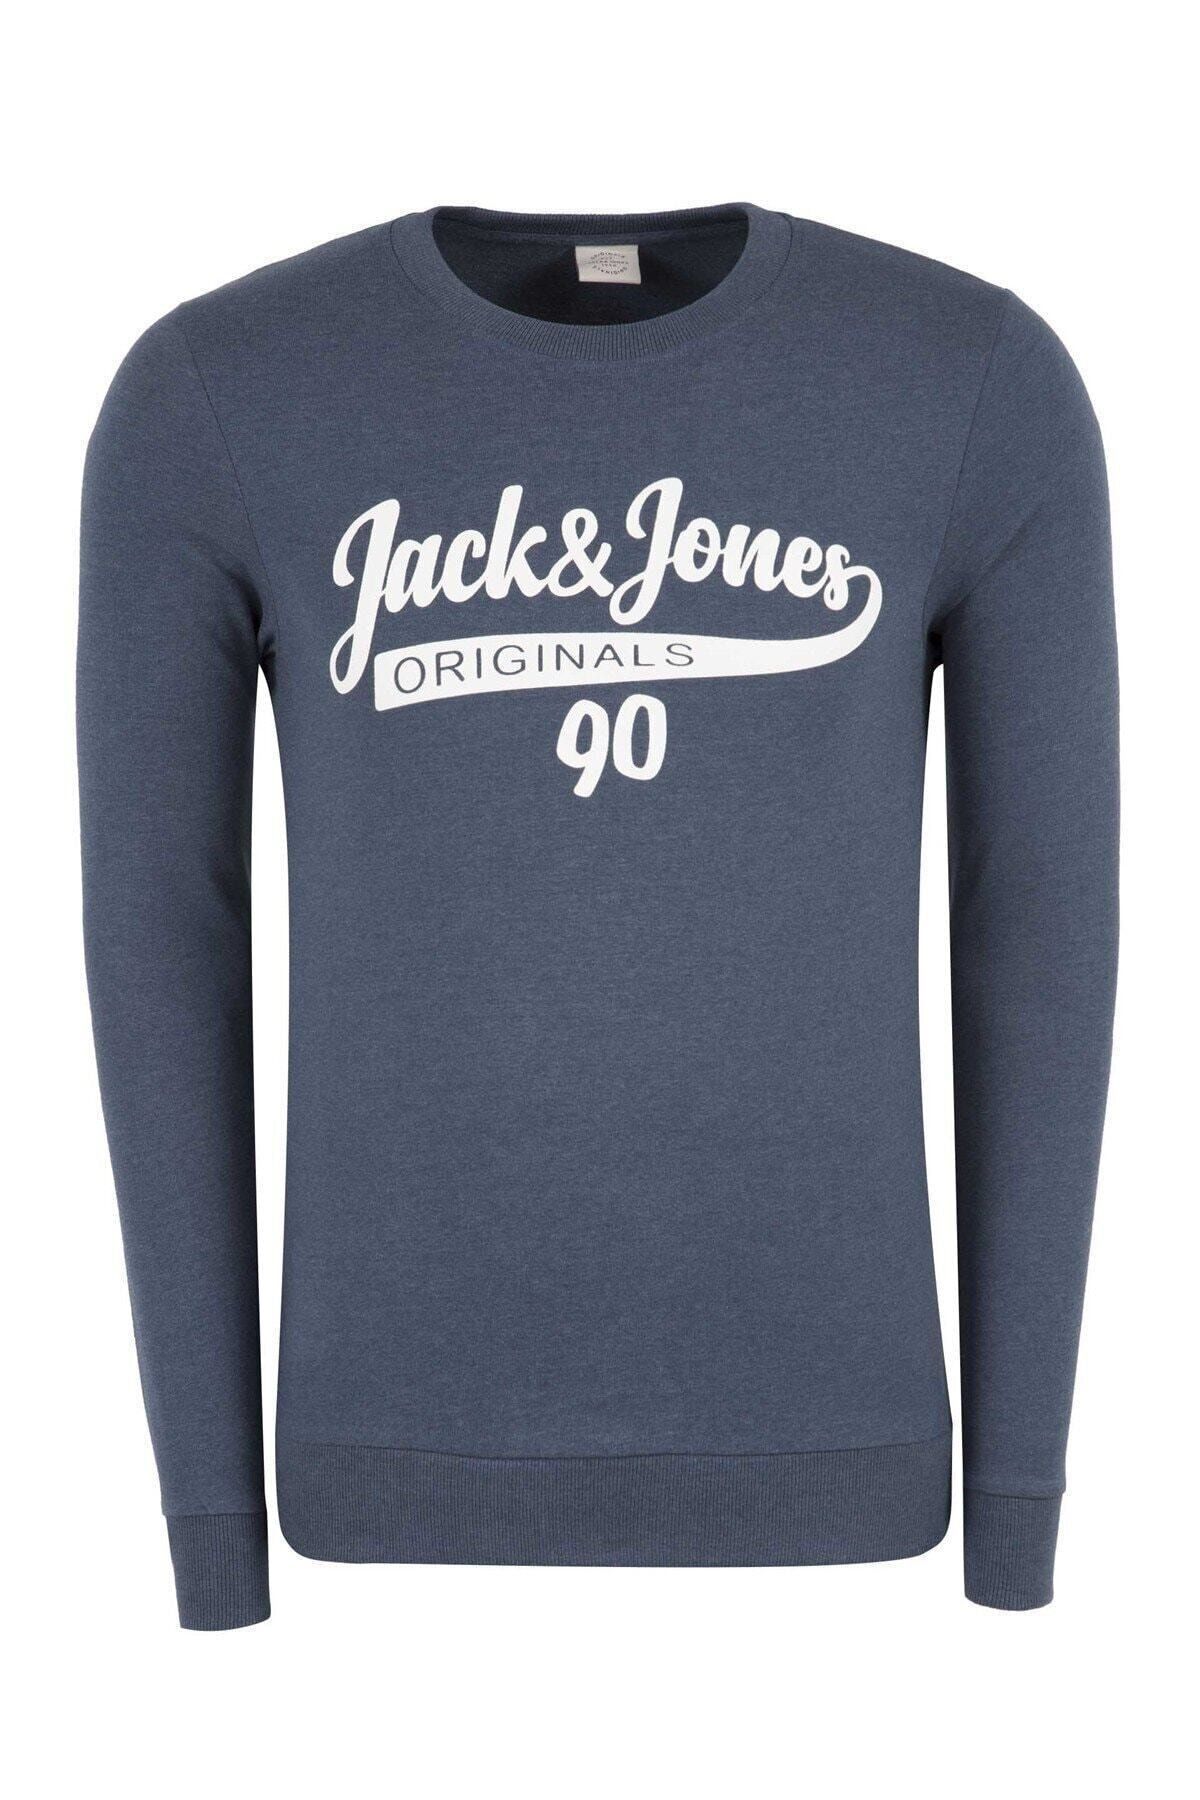 Jack & Jones Erkek Originals Sweatshirt 12137573